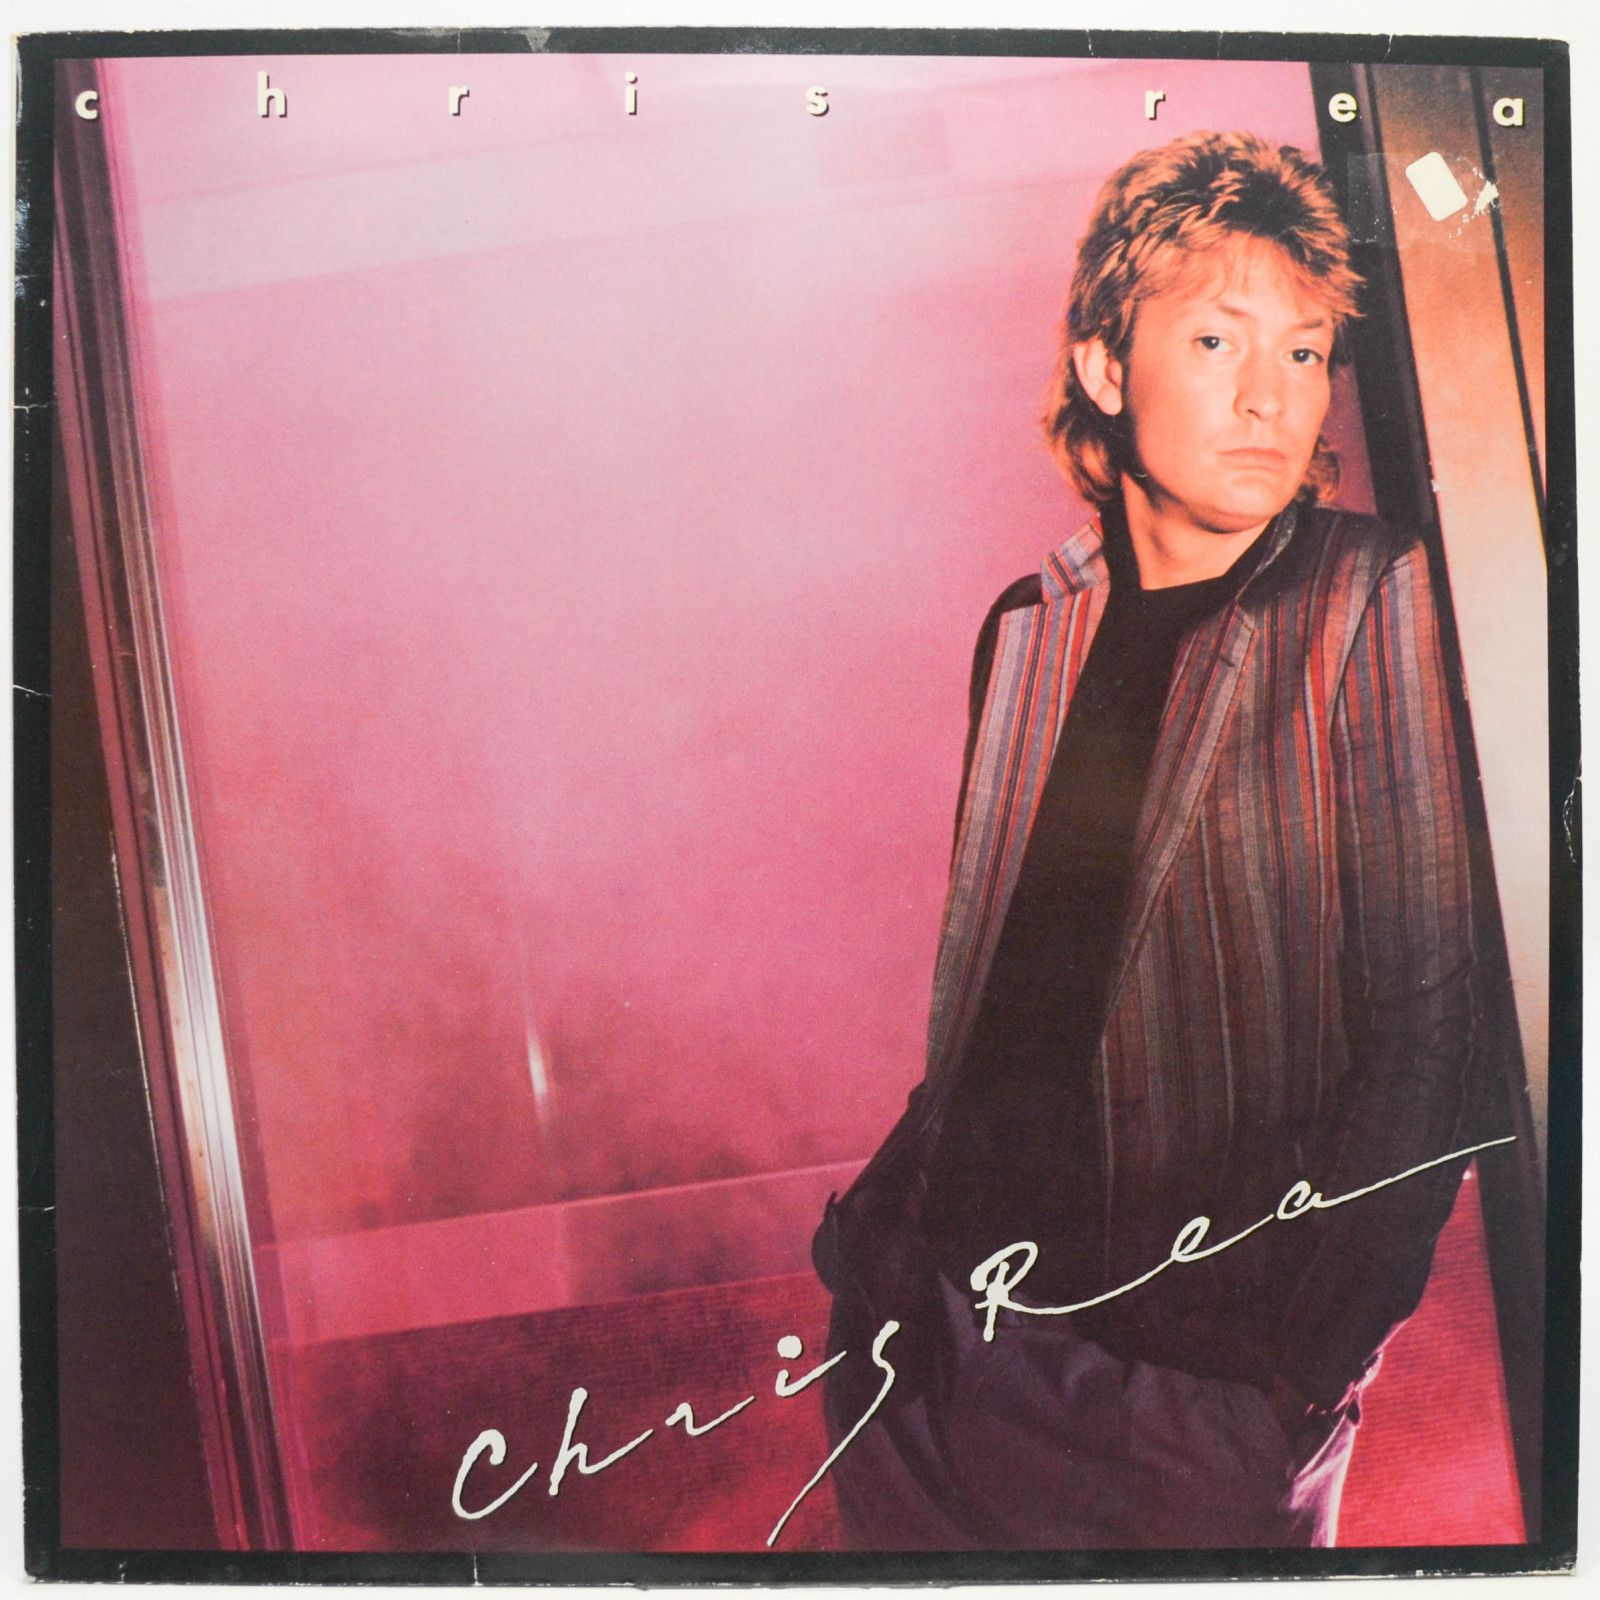 Chris Rea — Chris Rea, 1981